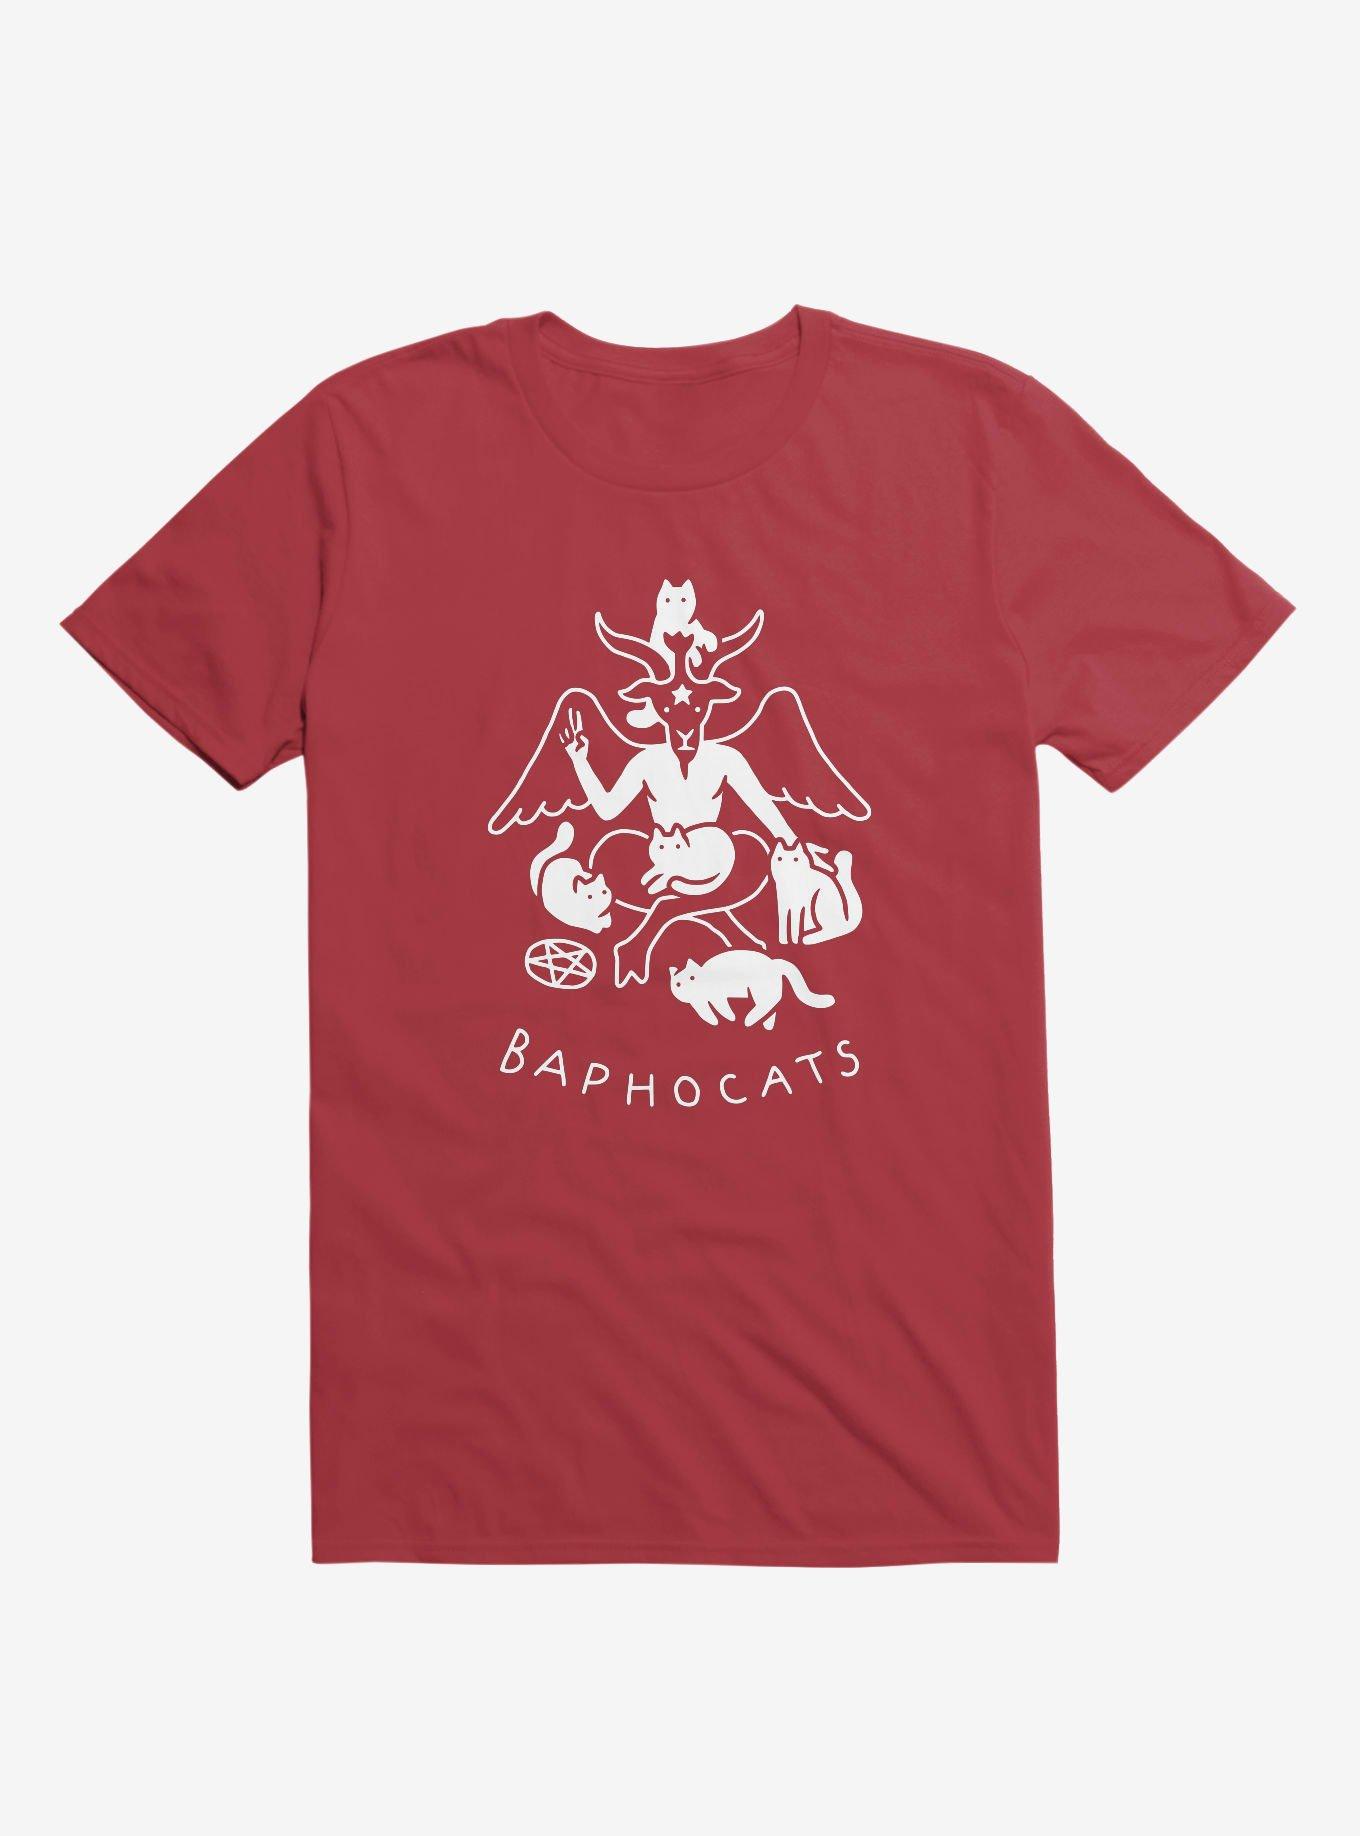 Baphocats Baphomet Cats Red T-Shirt, RED, hi-res